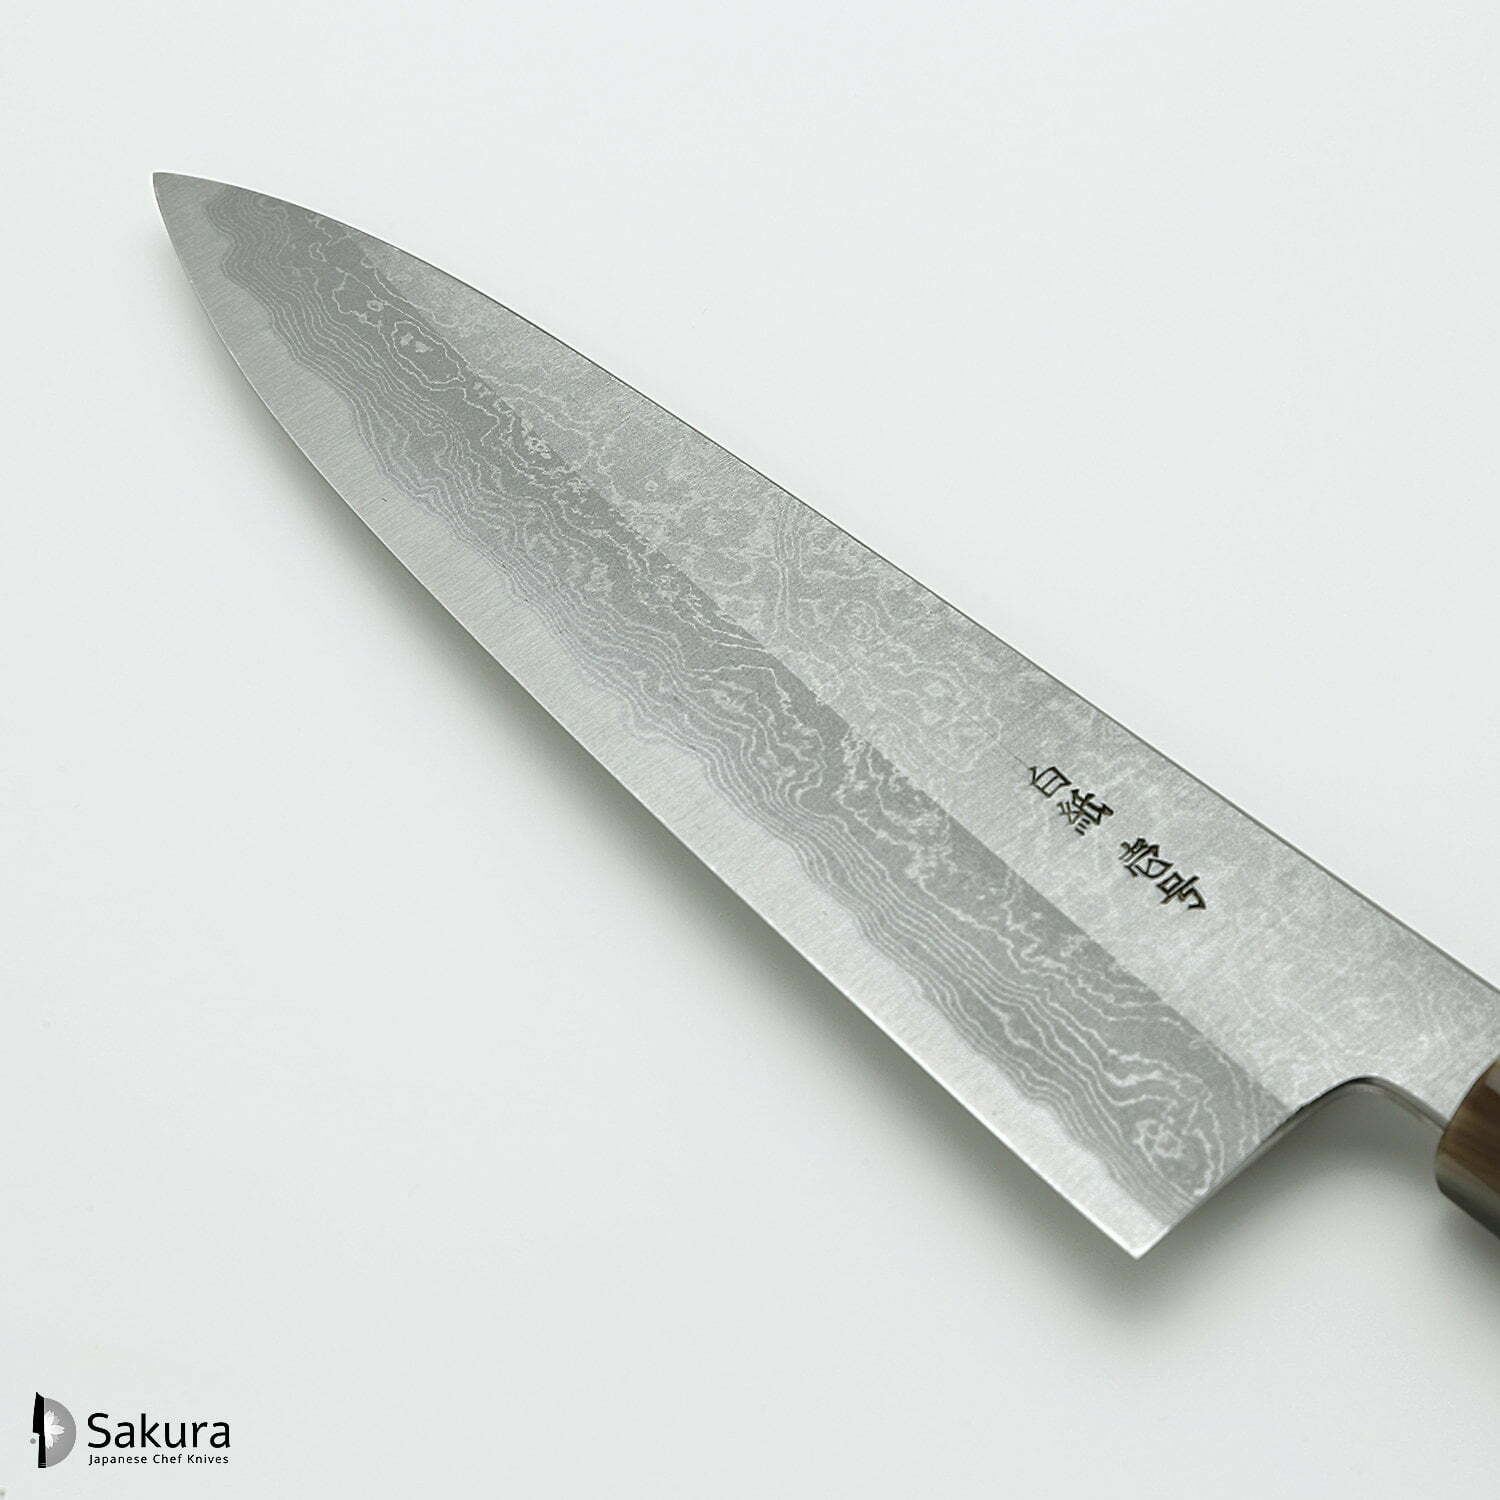 סכין שף רב-תכליתית גִּיוּטוֹ 210מ״מ מחושלת בעבודת יד 3 שכבות: פלדת פחמן יפנית מתקדמת מסוג Shirogami #1 עטופה פלדת דמשק אל-חלד גימור דמשק יושיקאזו טאנקה יפן